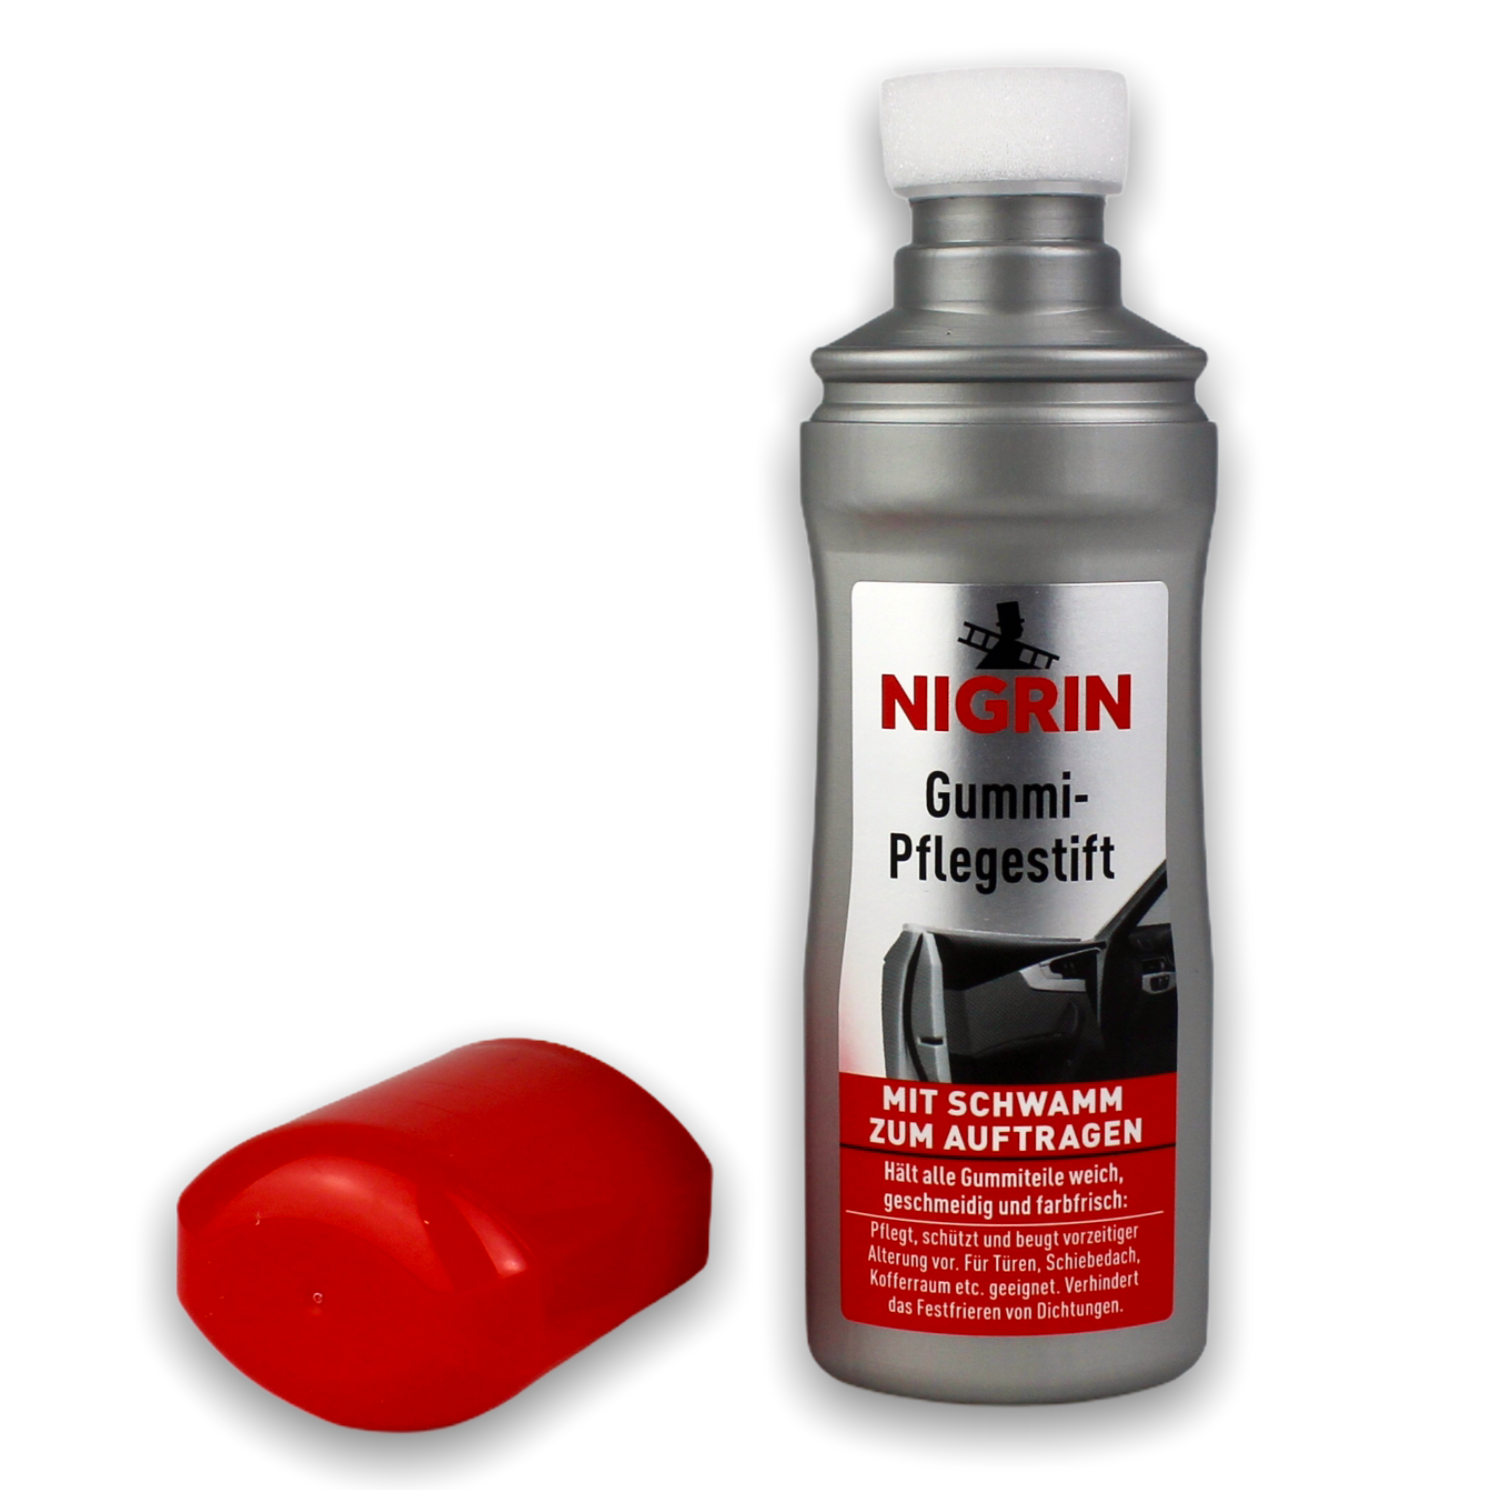 NIGRIN NIGRIN Caravan Gummipflege-Stift 250ml - Farbauffrischend